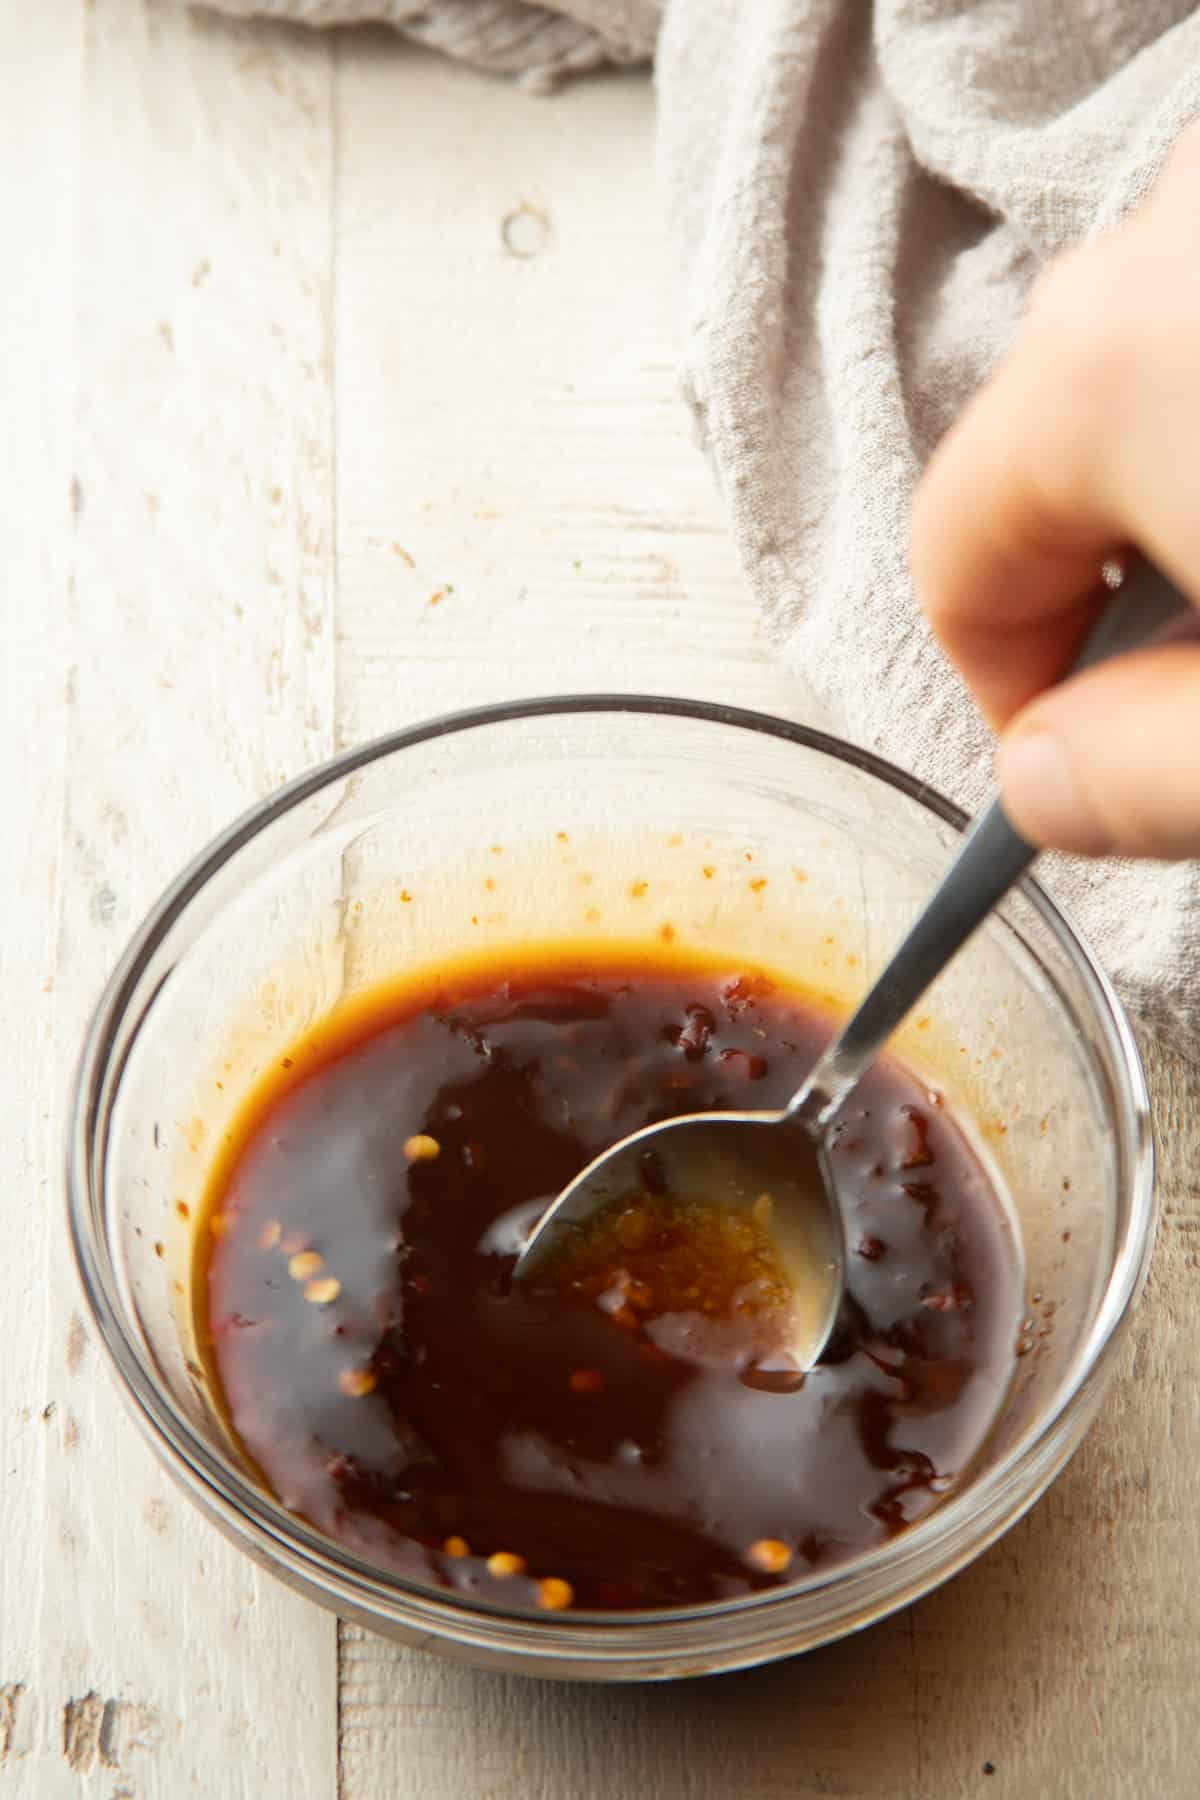 Hand stirring sauce ingredients for Vegan Drunken Noodles together in a glass bowl.